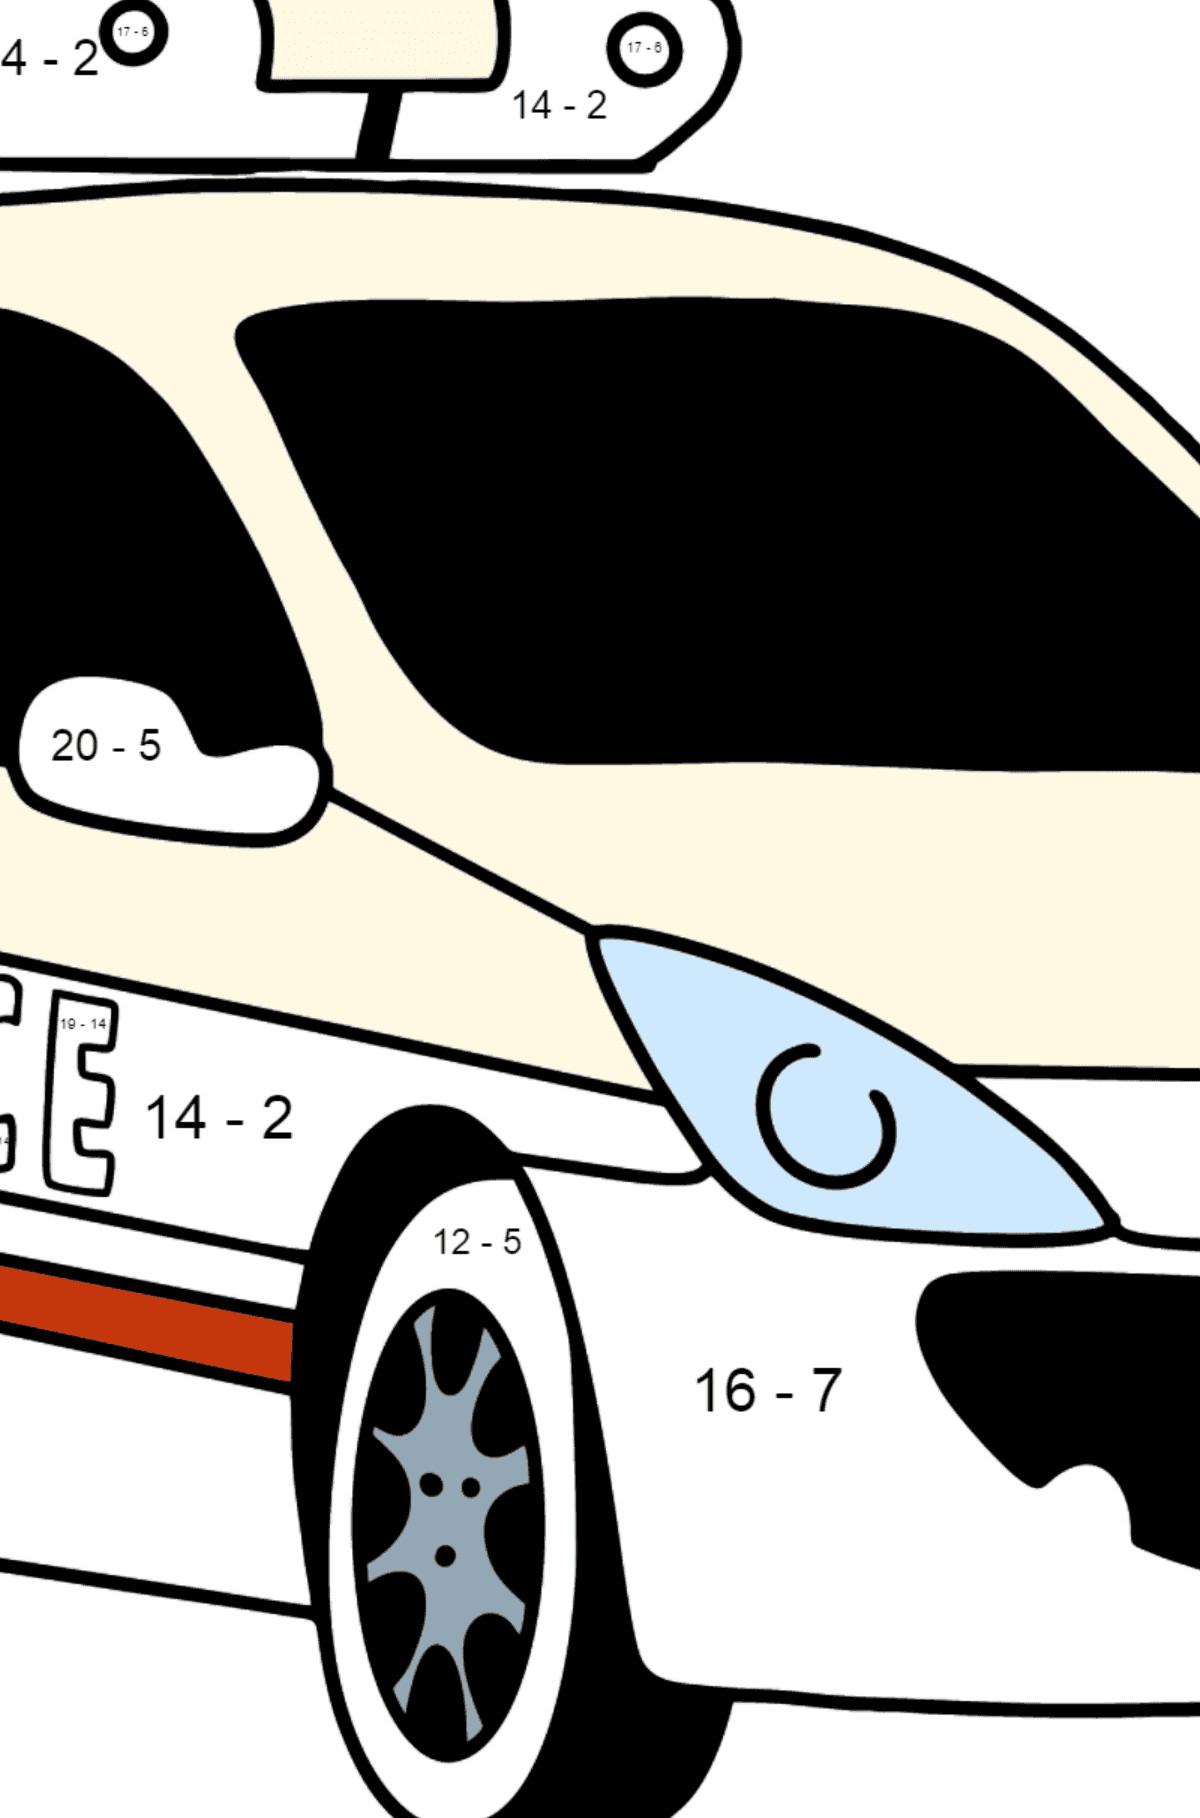 Polizeiauto in Frankreich Ausmalbild - Mathe Ausmalbilder - Subtraktion für Kinder